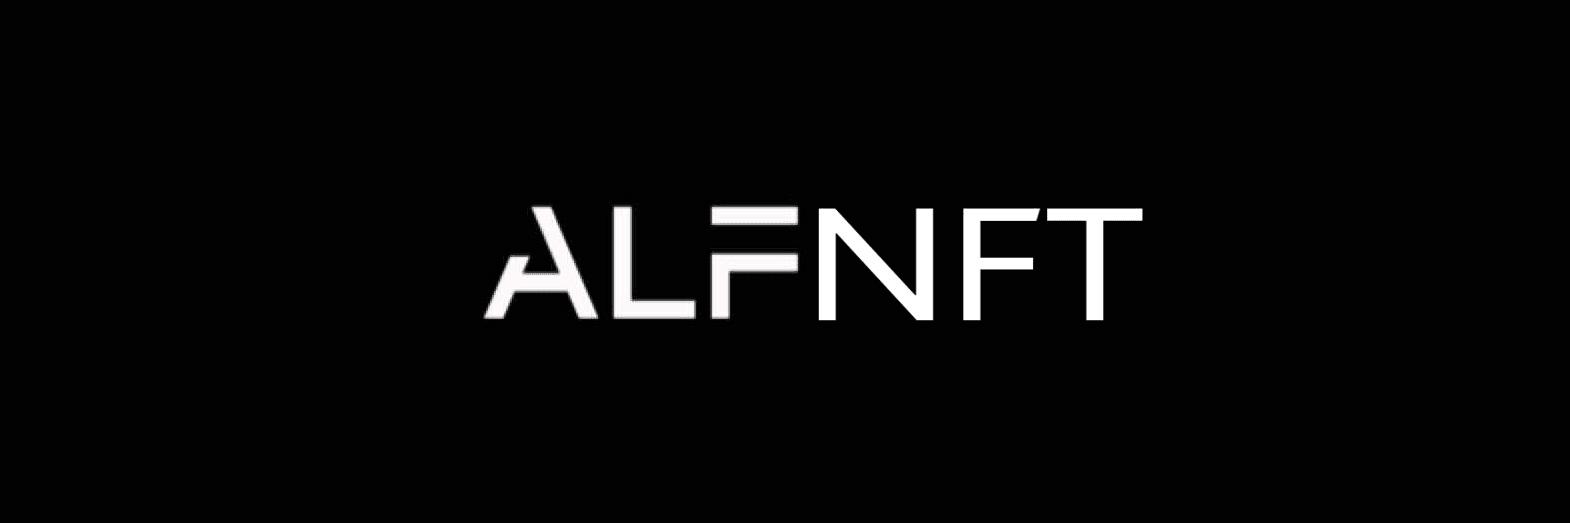 ALFNFT banner